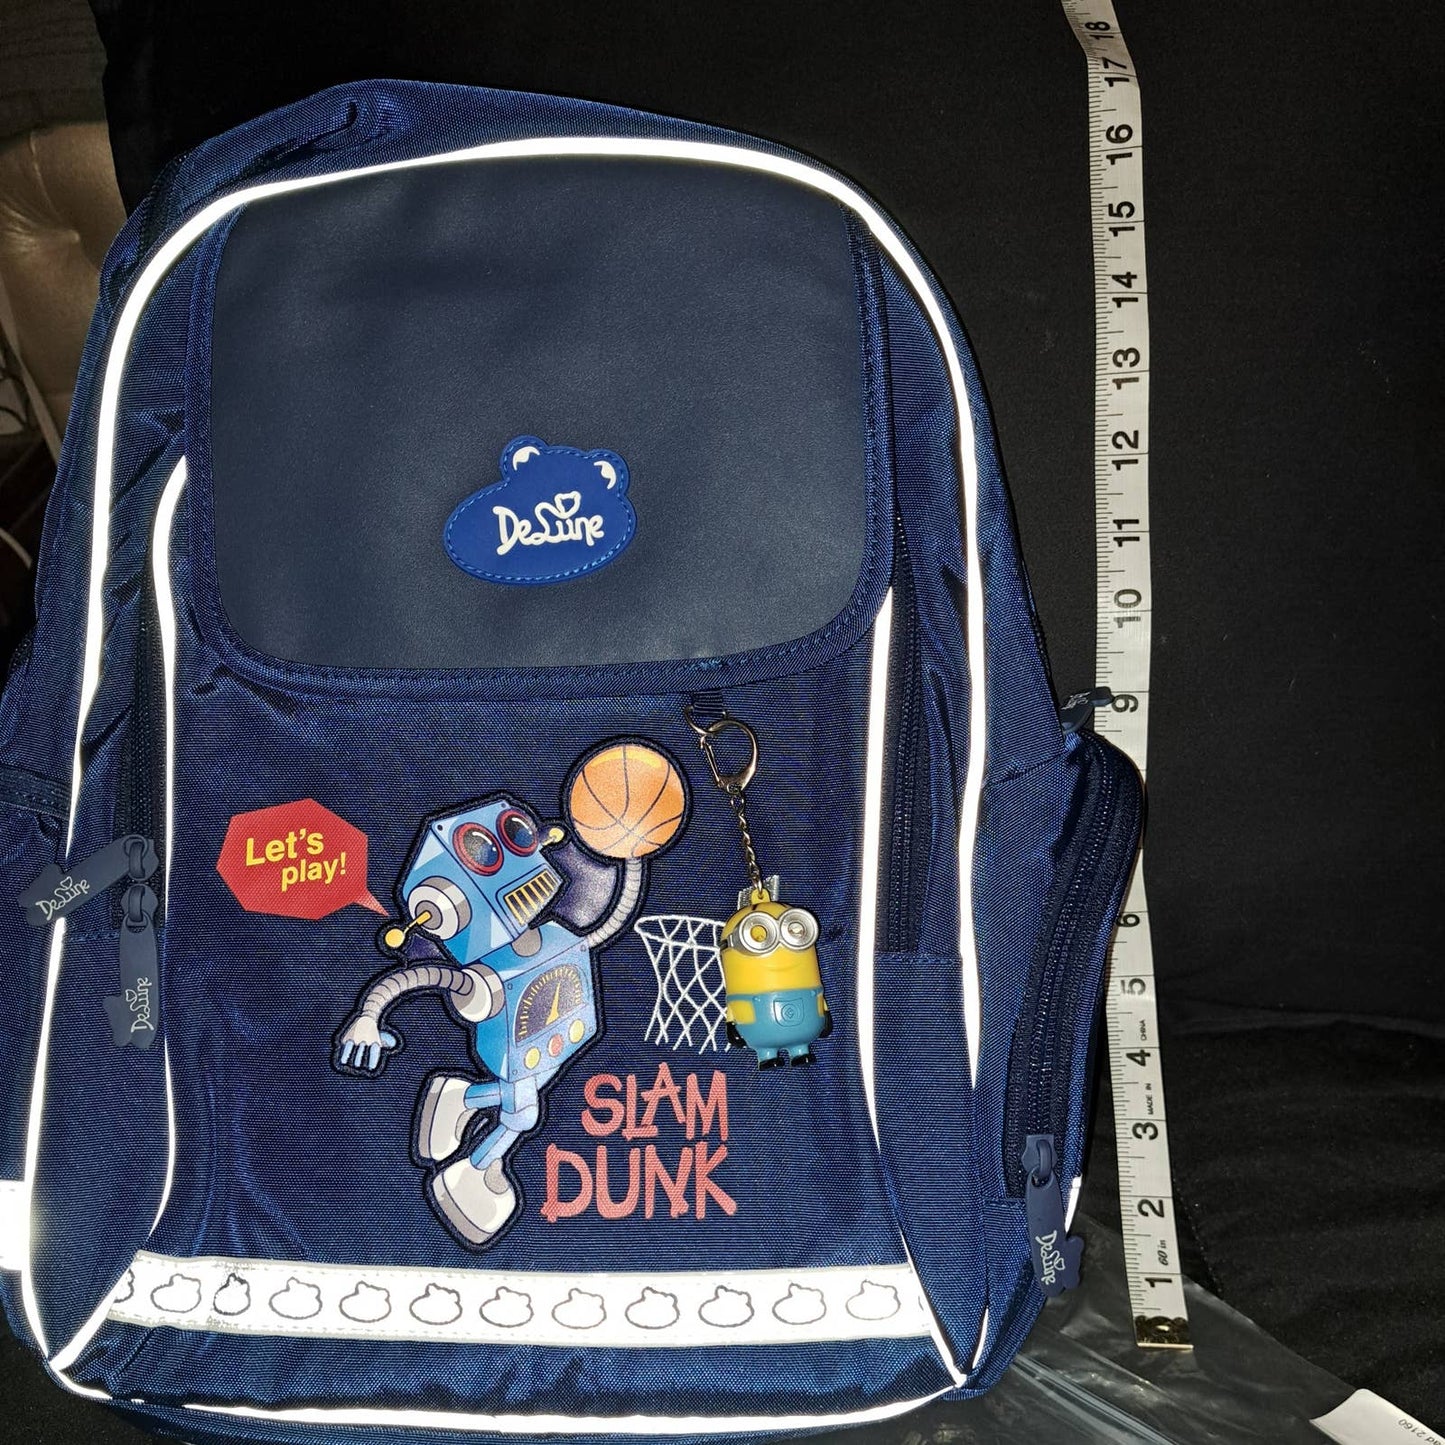 BRAND NEW BLUE DELUNE Full-size Kids Backpack Robot Basketball